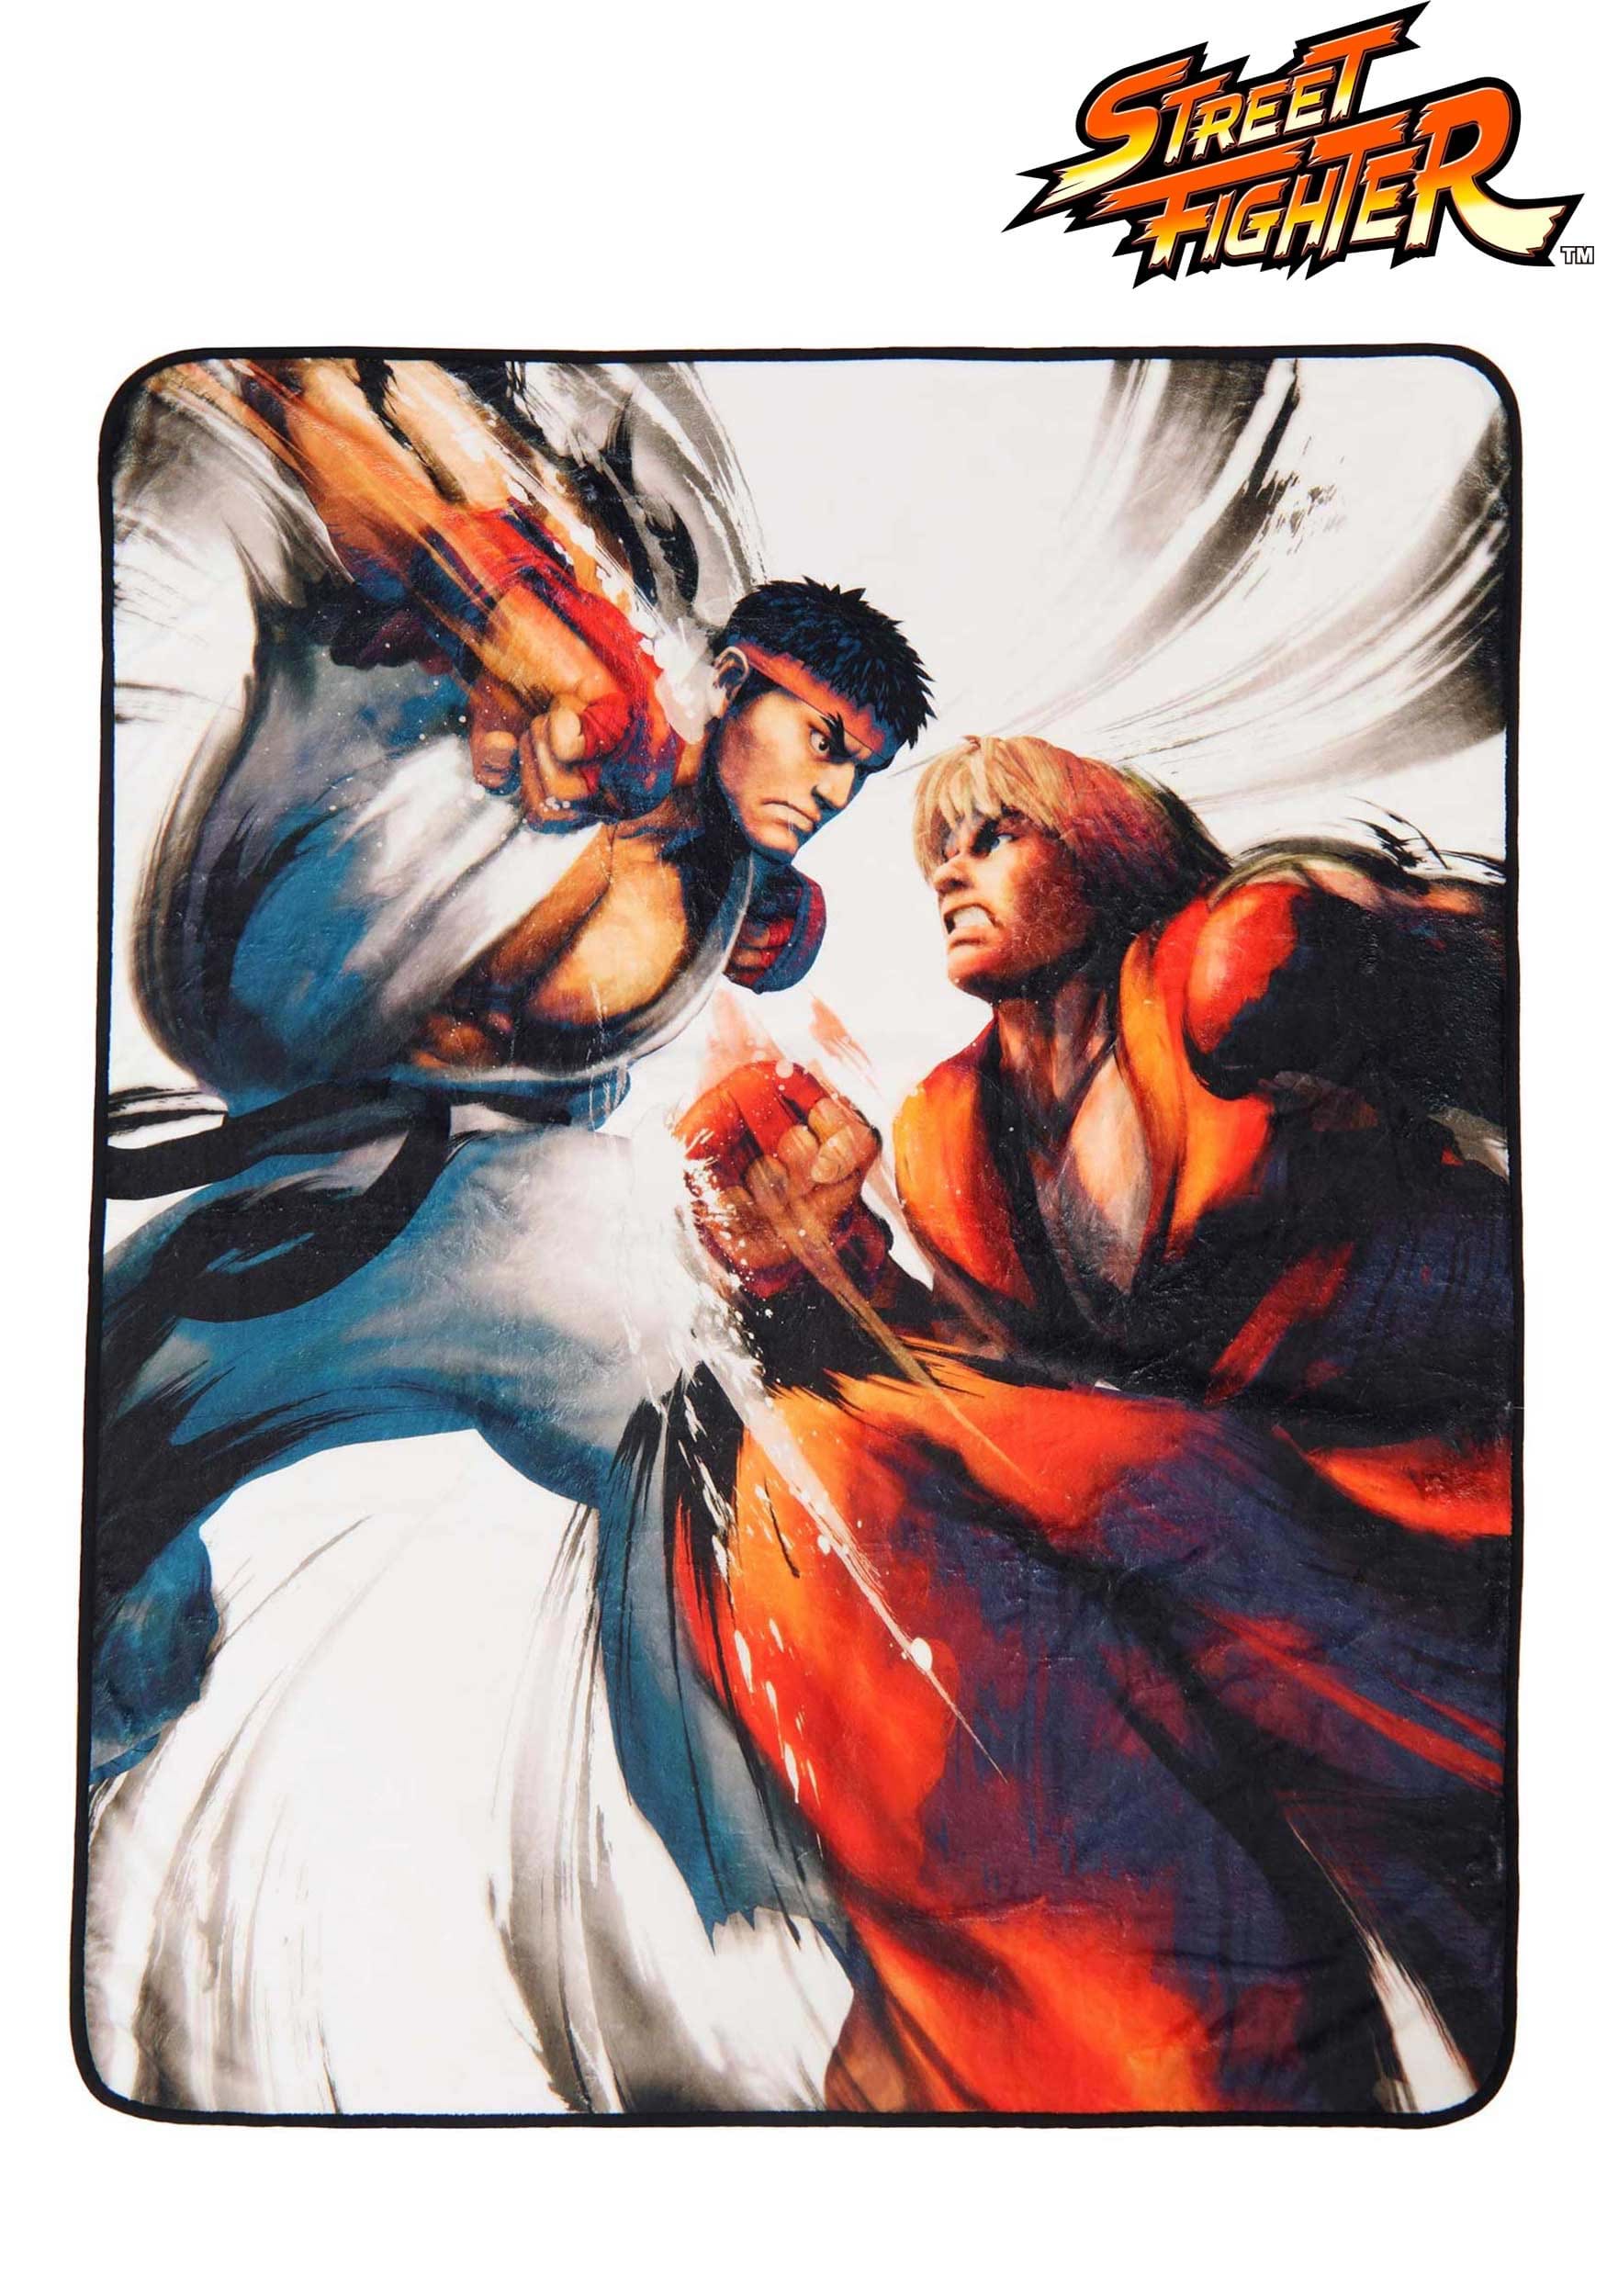 Street Fighter Ryu vs Ken